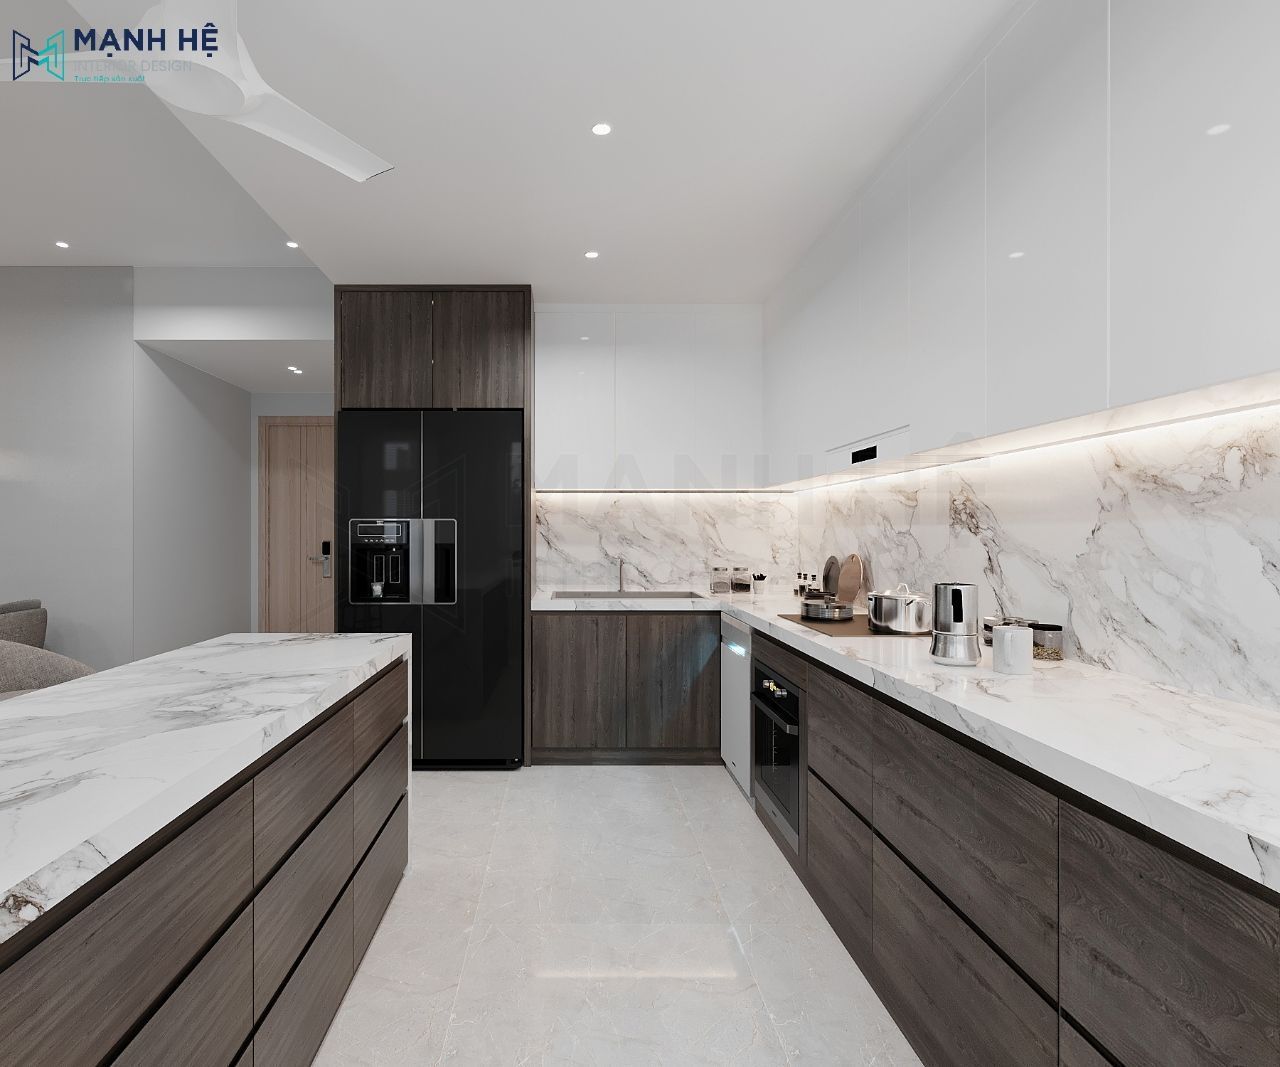 Mẫu phòng bếp tông trắng được thiết kế hệ tủ cao đụng trần phủ acrylic sáng bóng và tủ dưới phủ medanin nhám tạo sự sang trọng, sạch sẽ